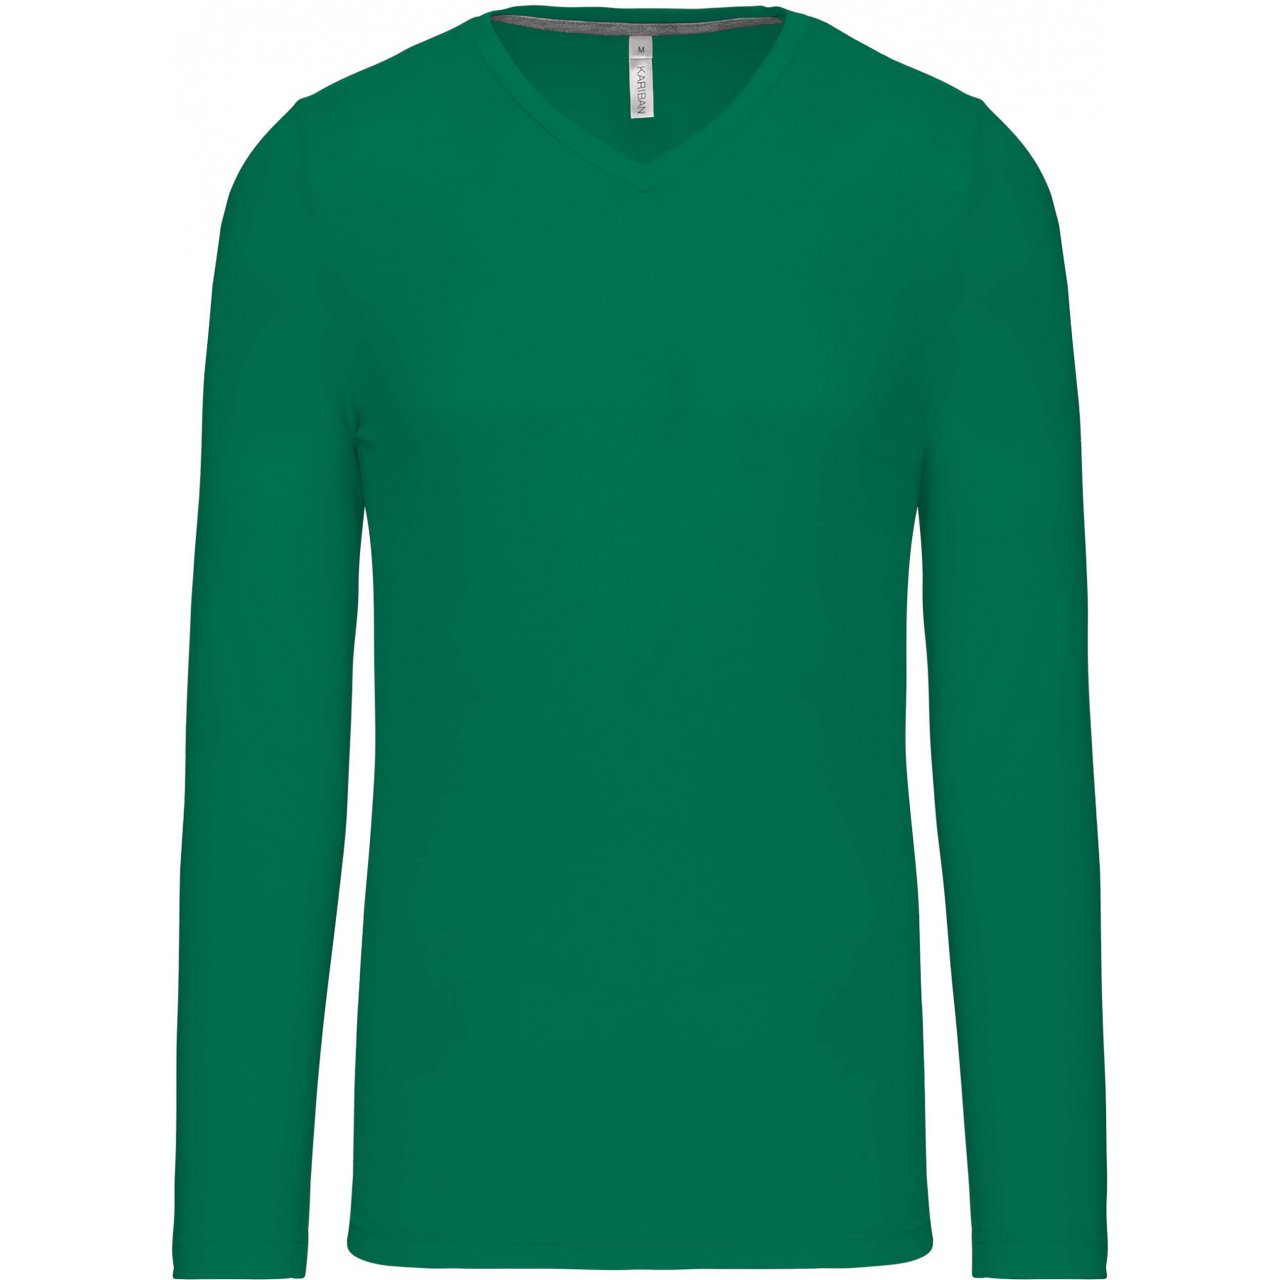 Pánské tričko Kariban dlouhý rukáv V-neck - zelené, 3XL